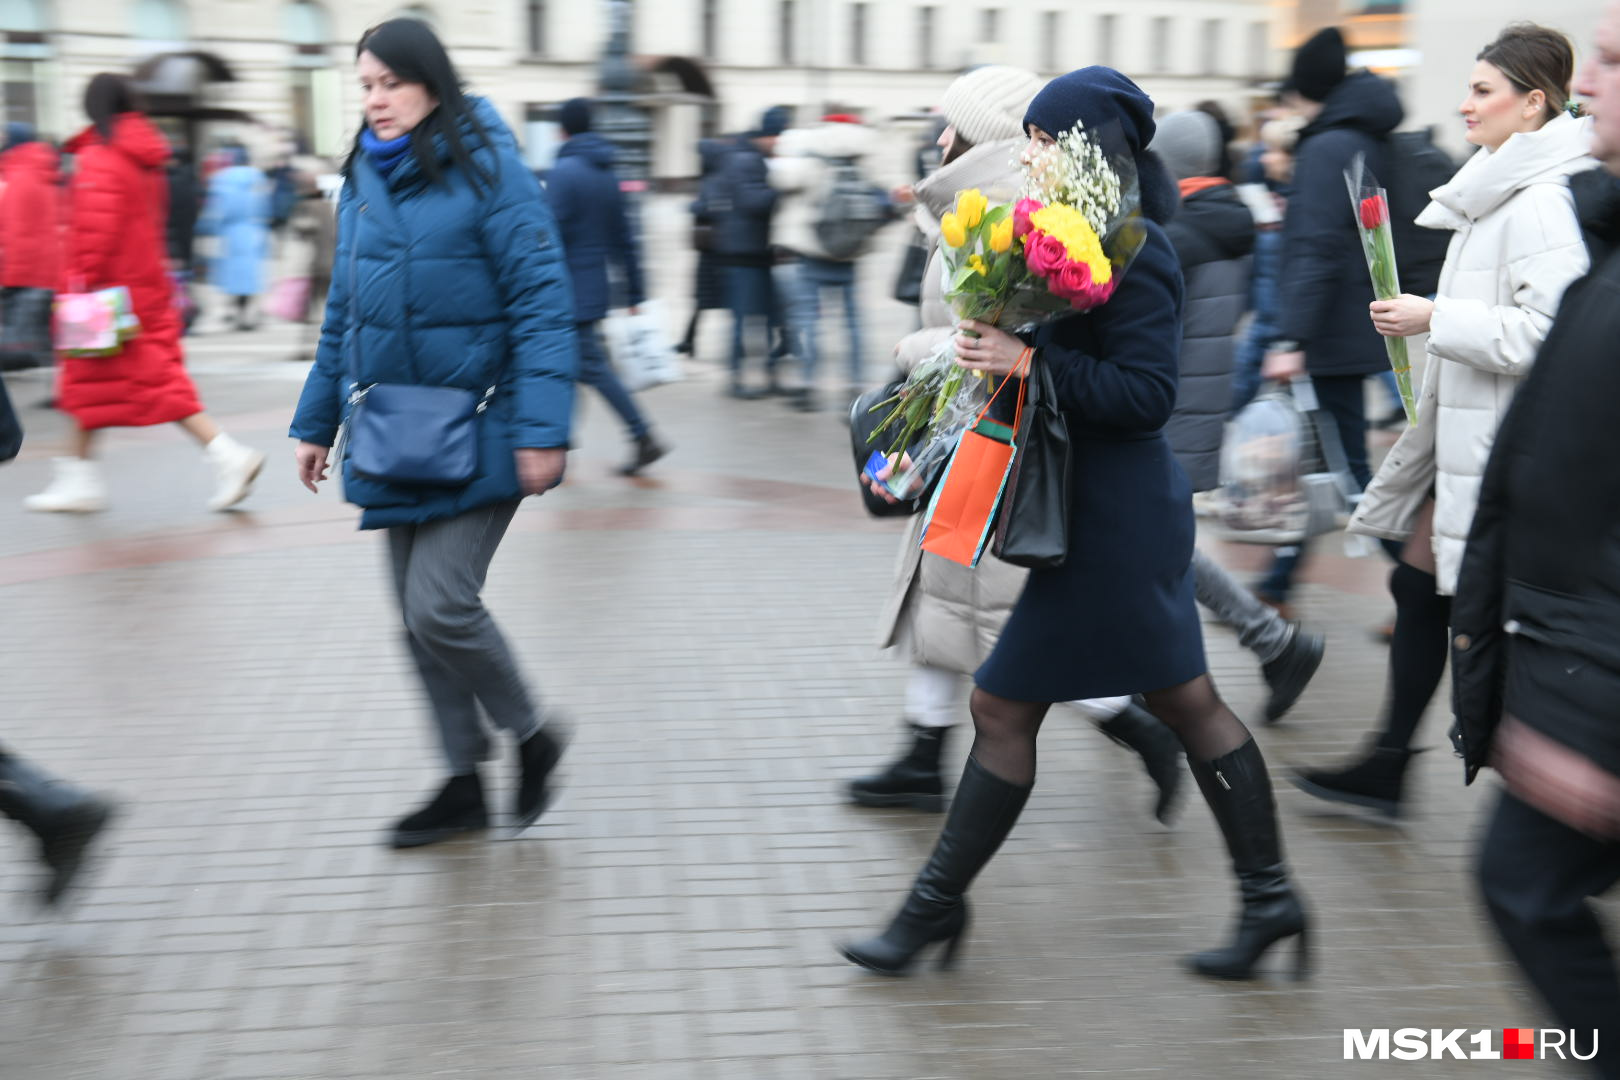 Выходи на улицу народ. Люди на улицах Москвы. Фото людей на улице. Народ на улицах Москвы сегодня. Фотосессия в марте в Москве.